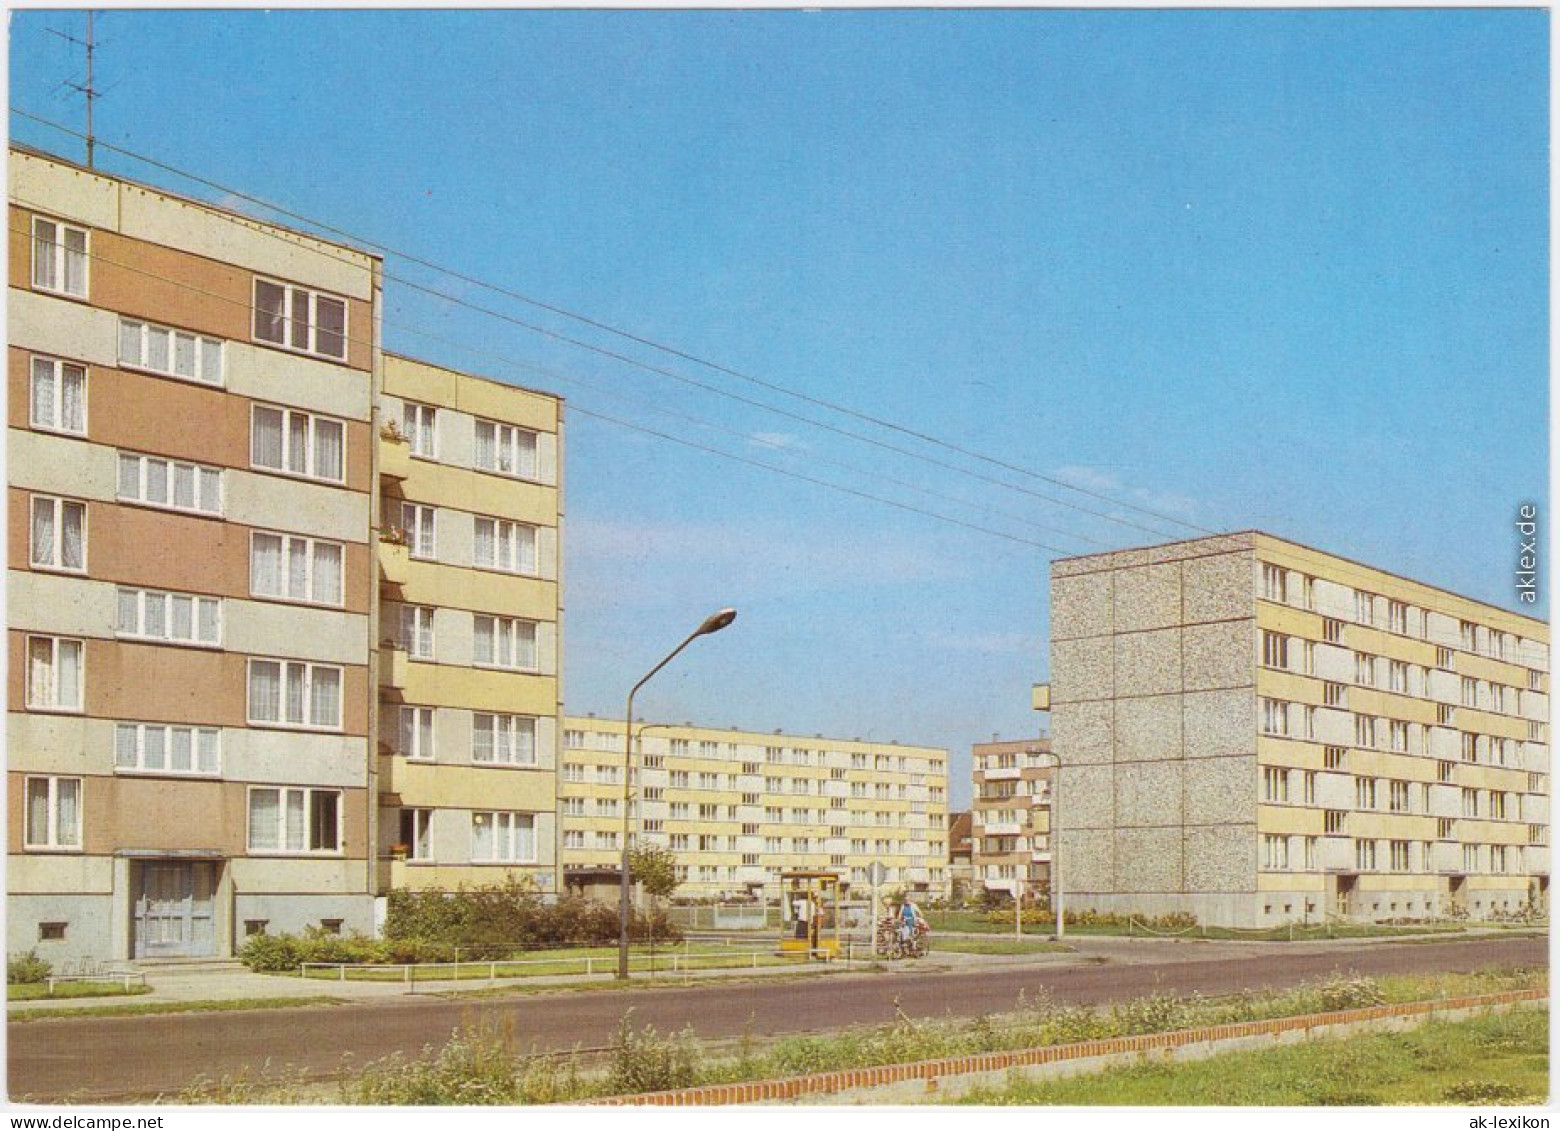 Ansichtskarte Wittenberge Perleberger Straße  - Neubaugebiet 1988 - Wittenberge